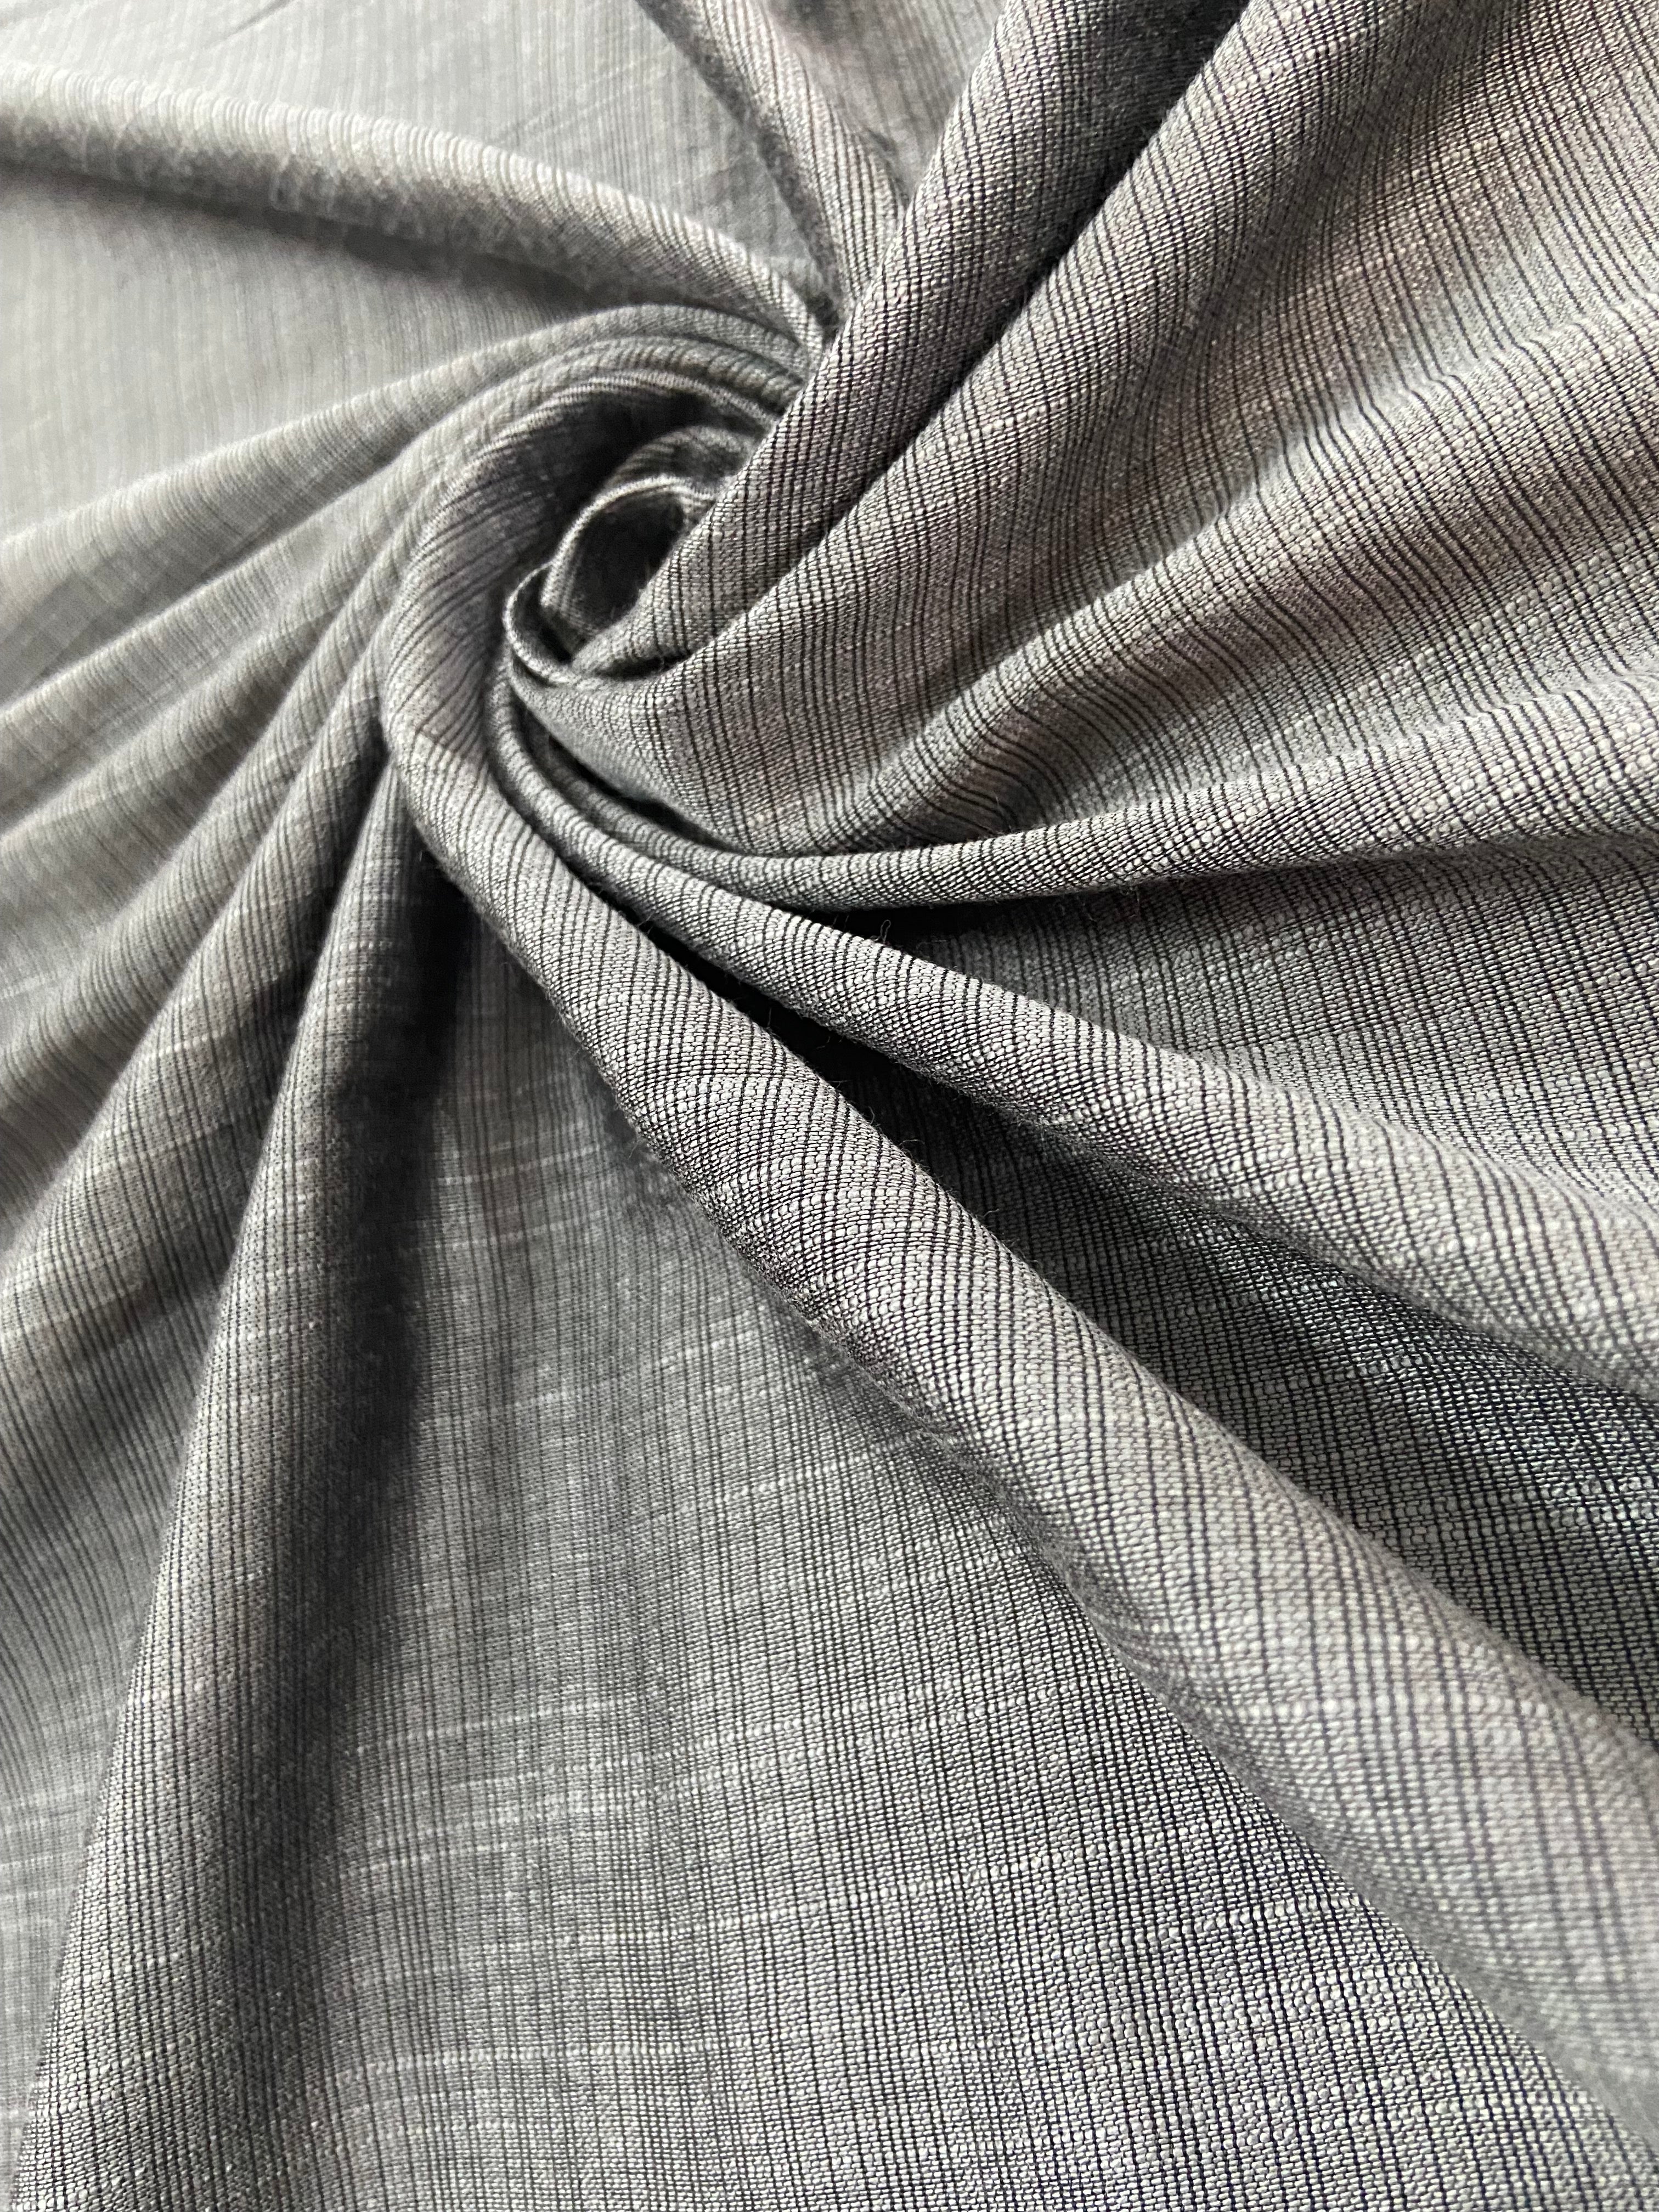 Fabric #003